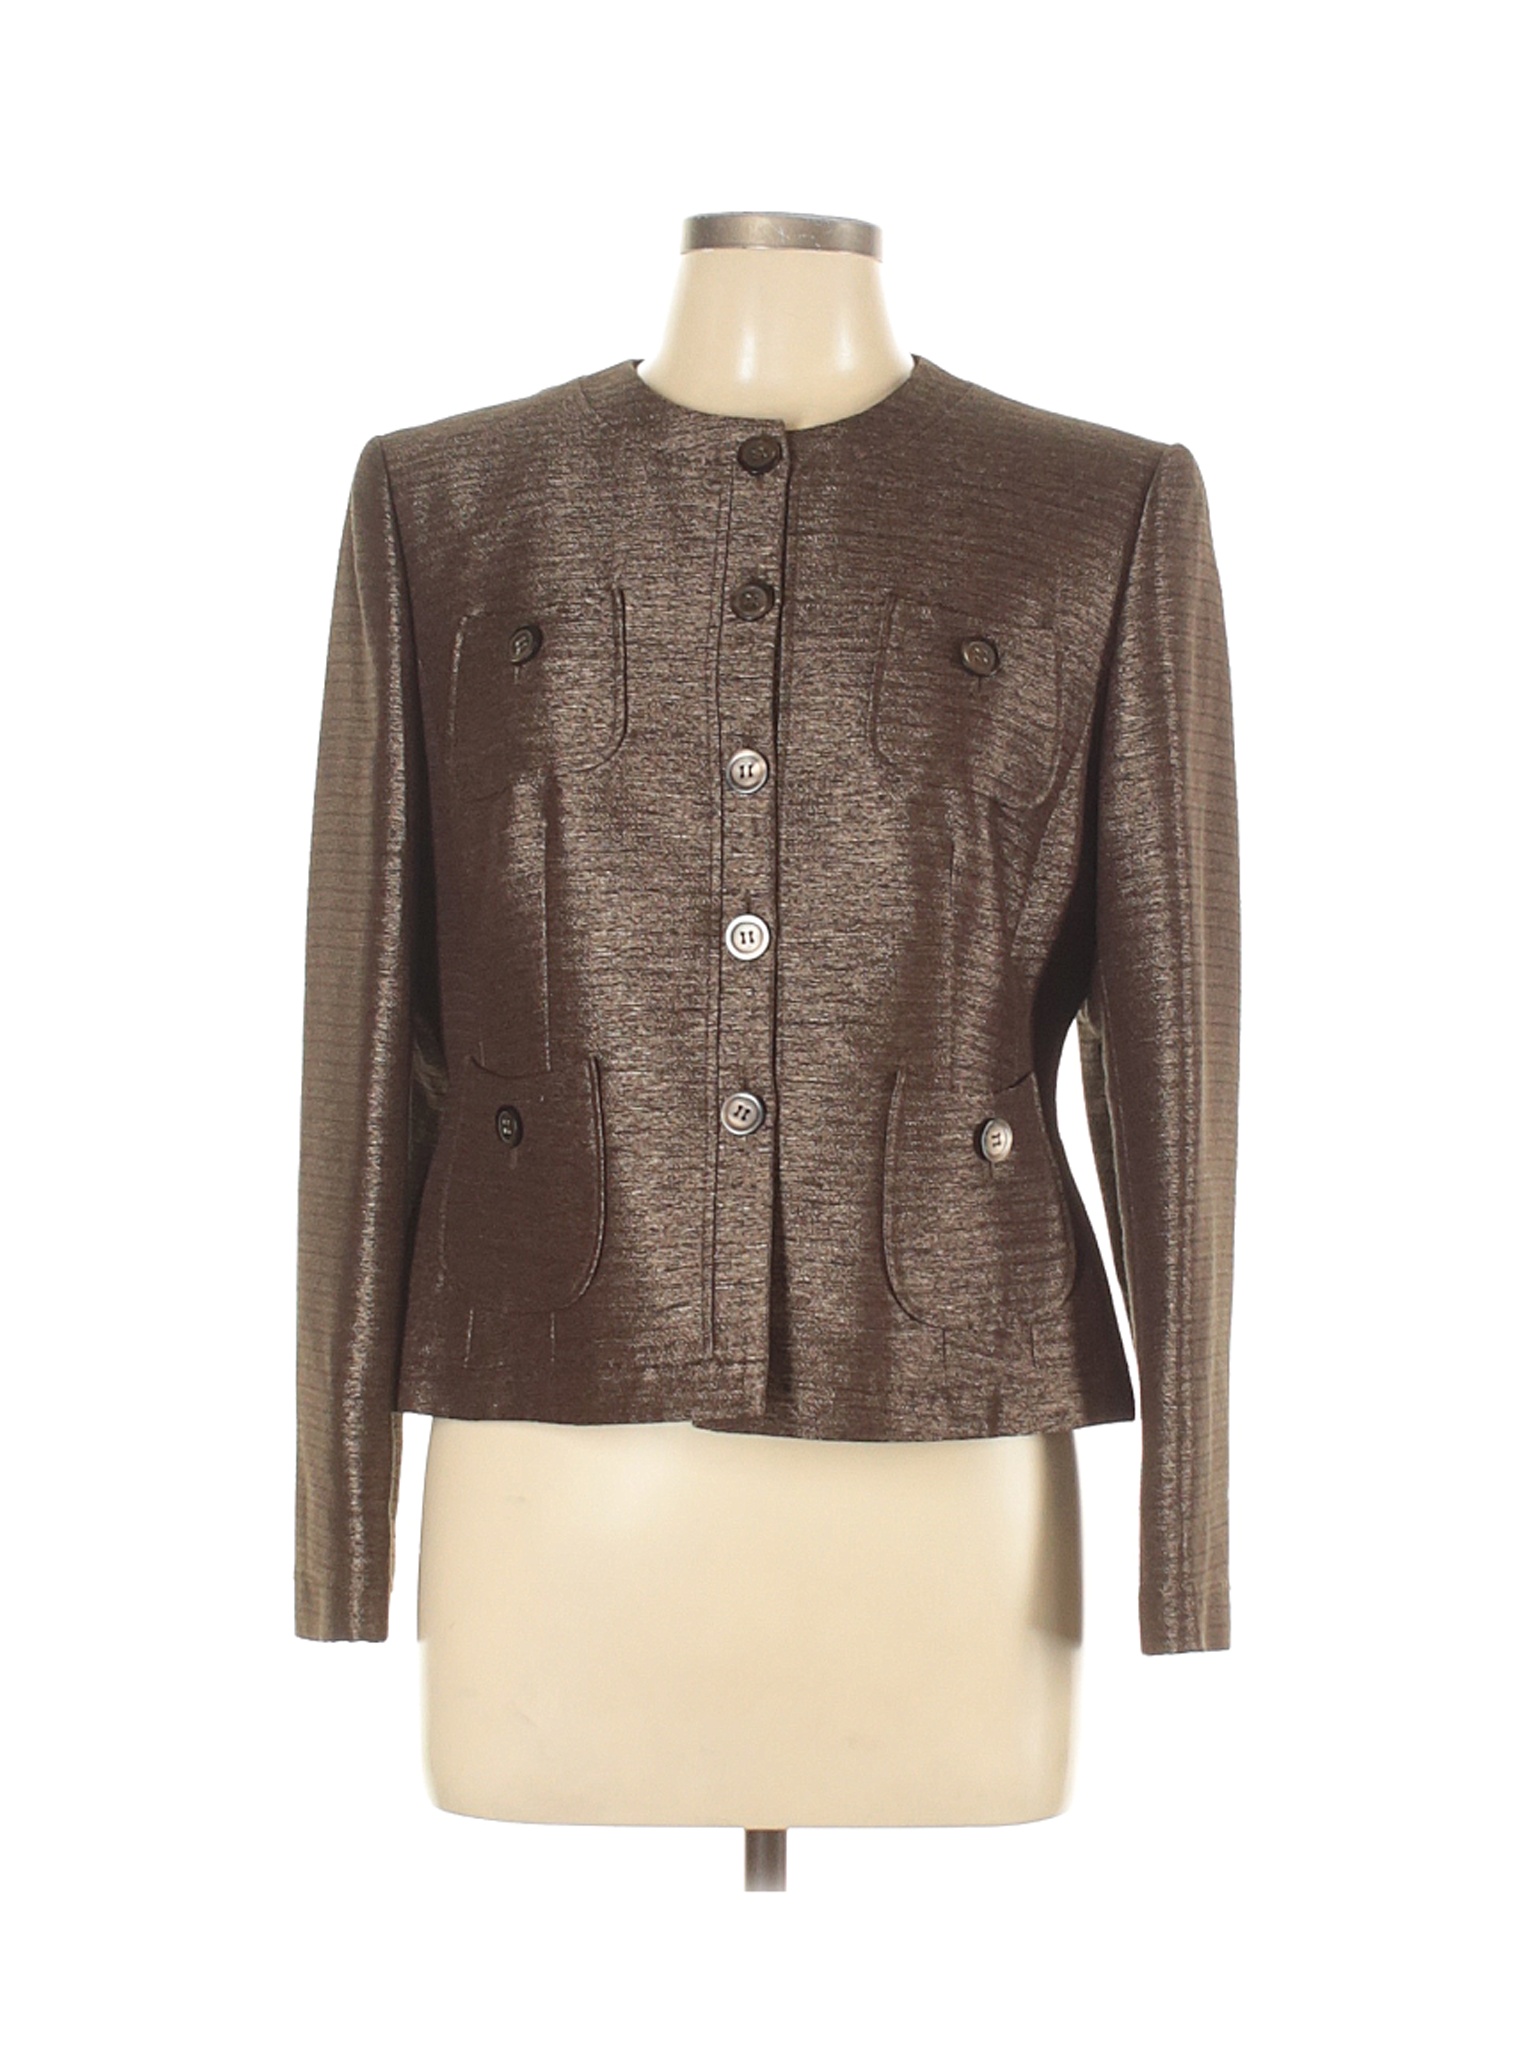 Le Suit Women Brown Jacket 12 Petites | eBay